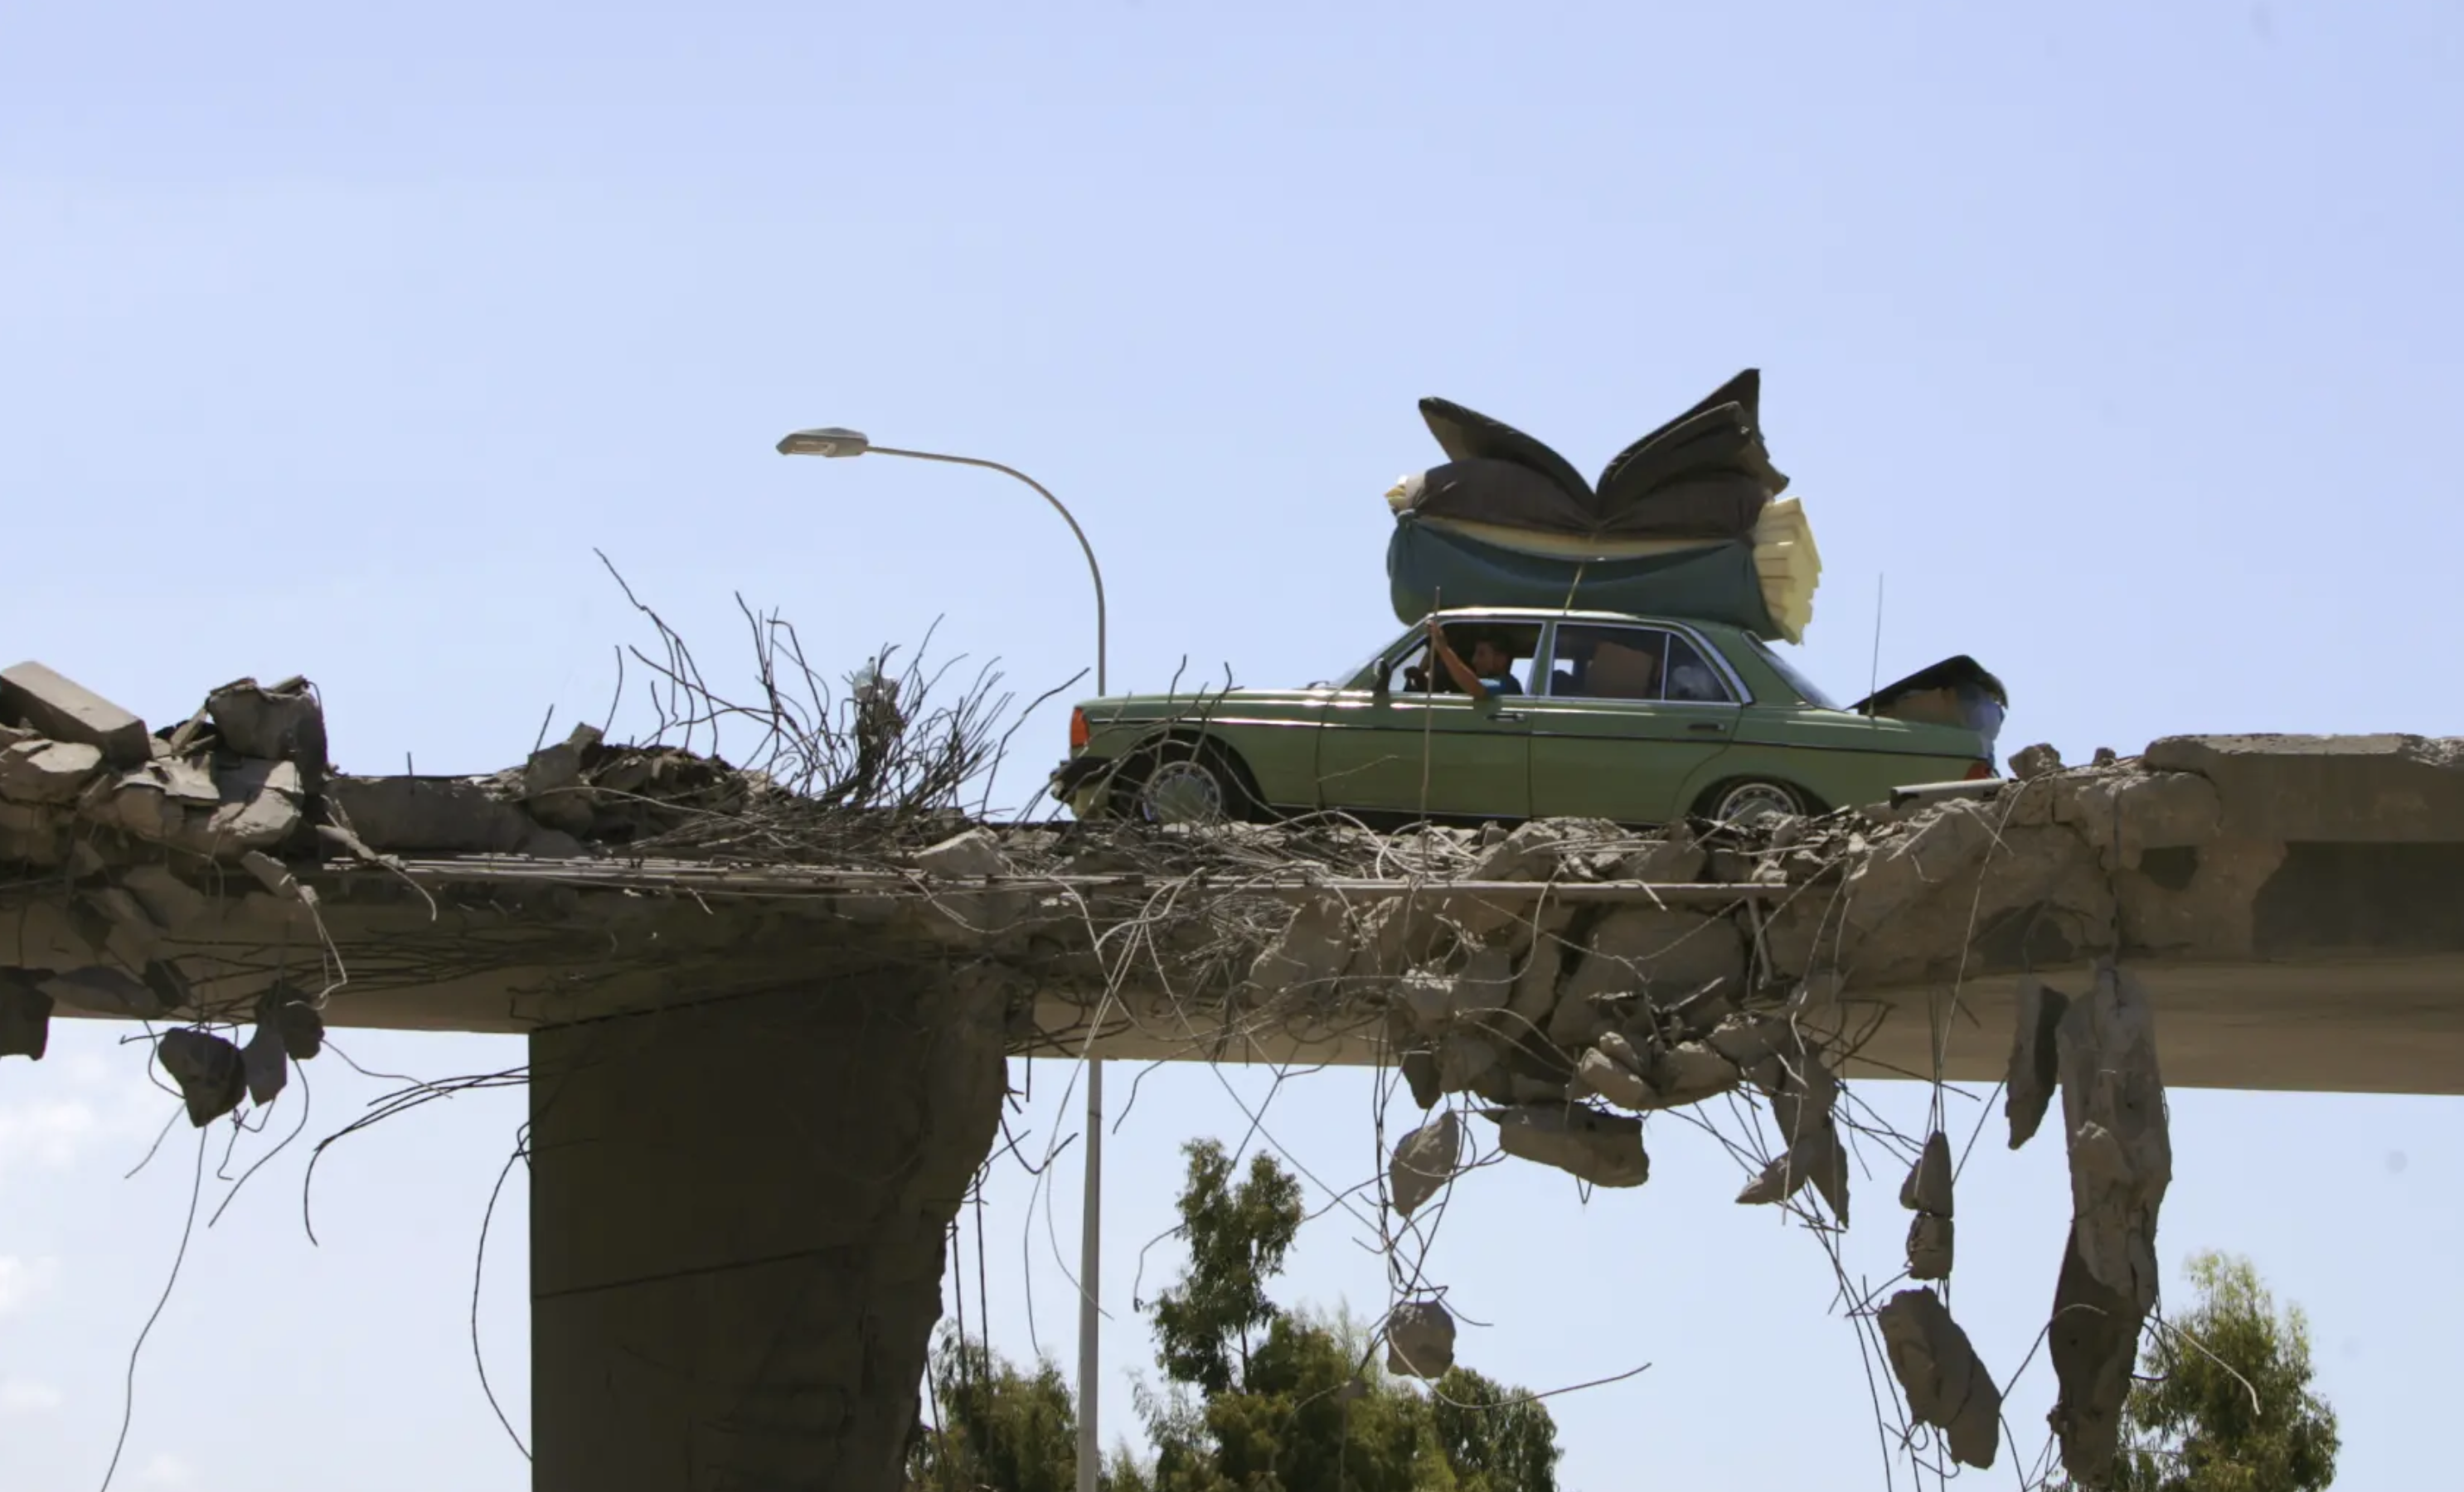 سيارة تعبر فوق جسر مهدم في لبنان خلال حرب تموز (يوليو) 2006